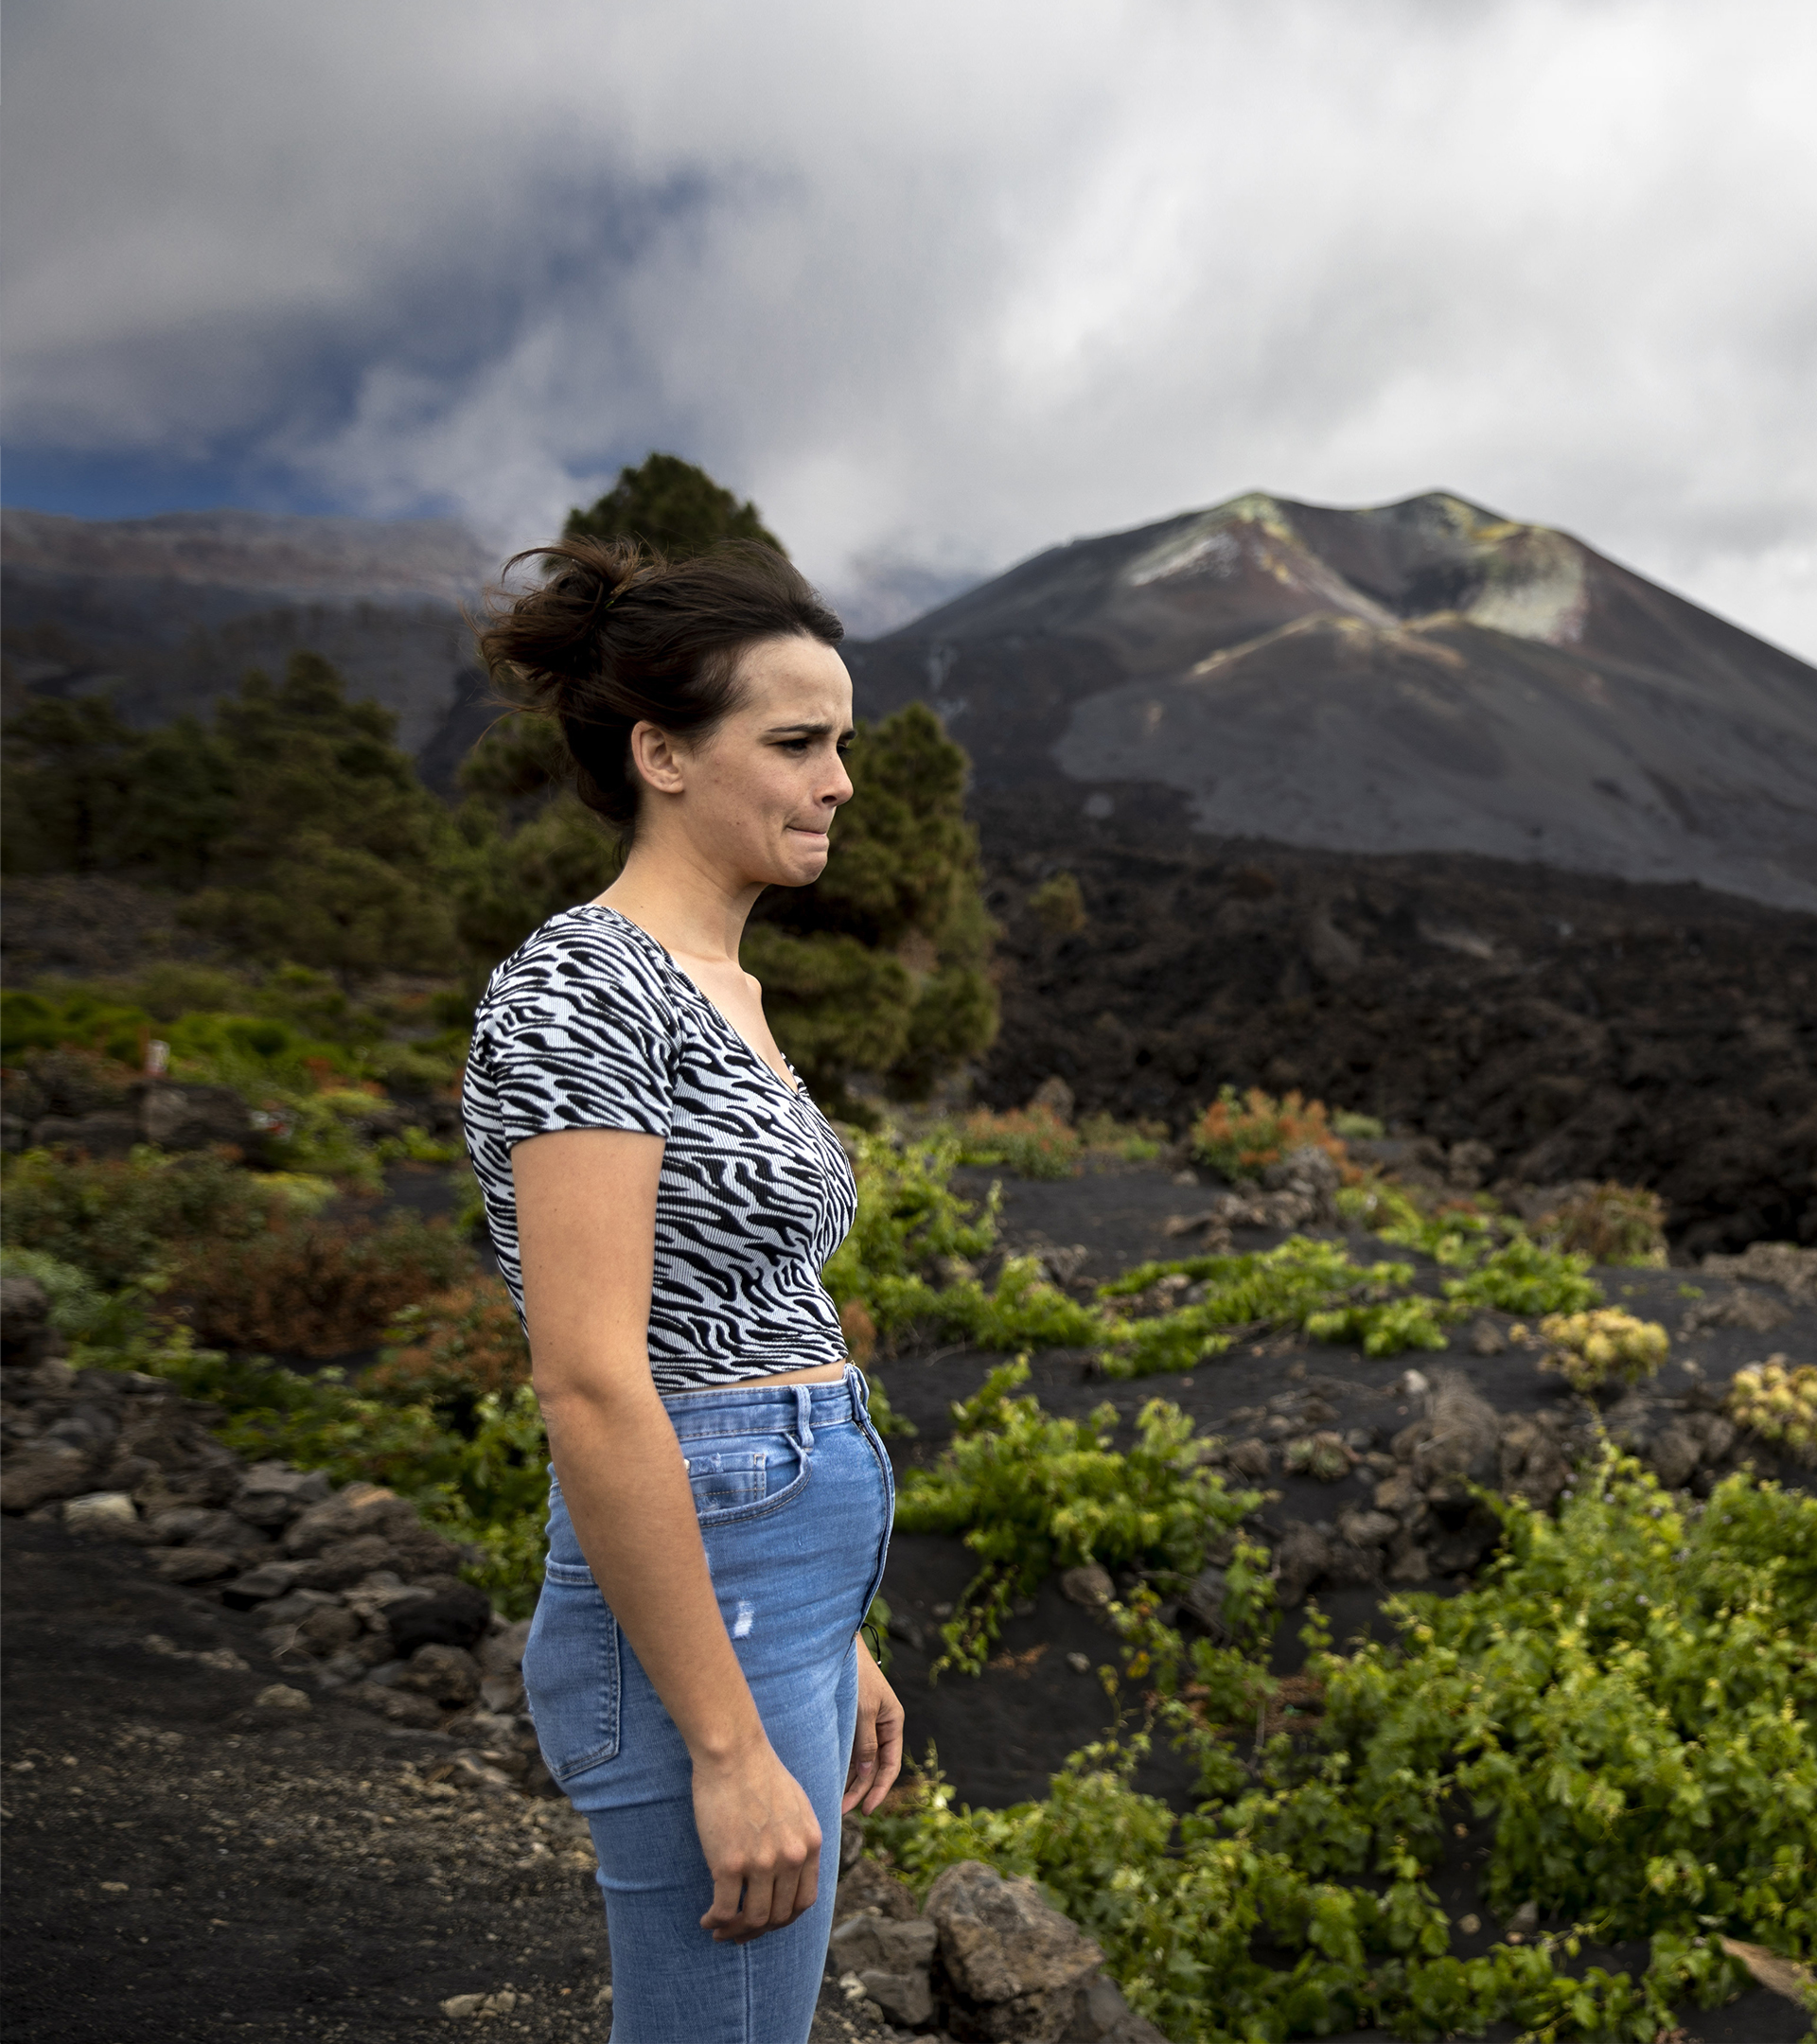 Seis meses de decepción tras el volcán de La Palma: "Sueño con volver a estar en mi casa un solo día y luego morirme"